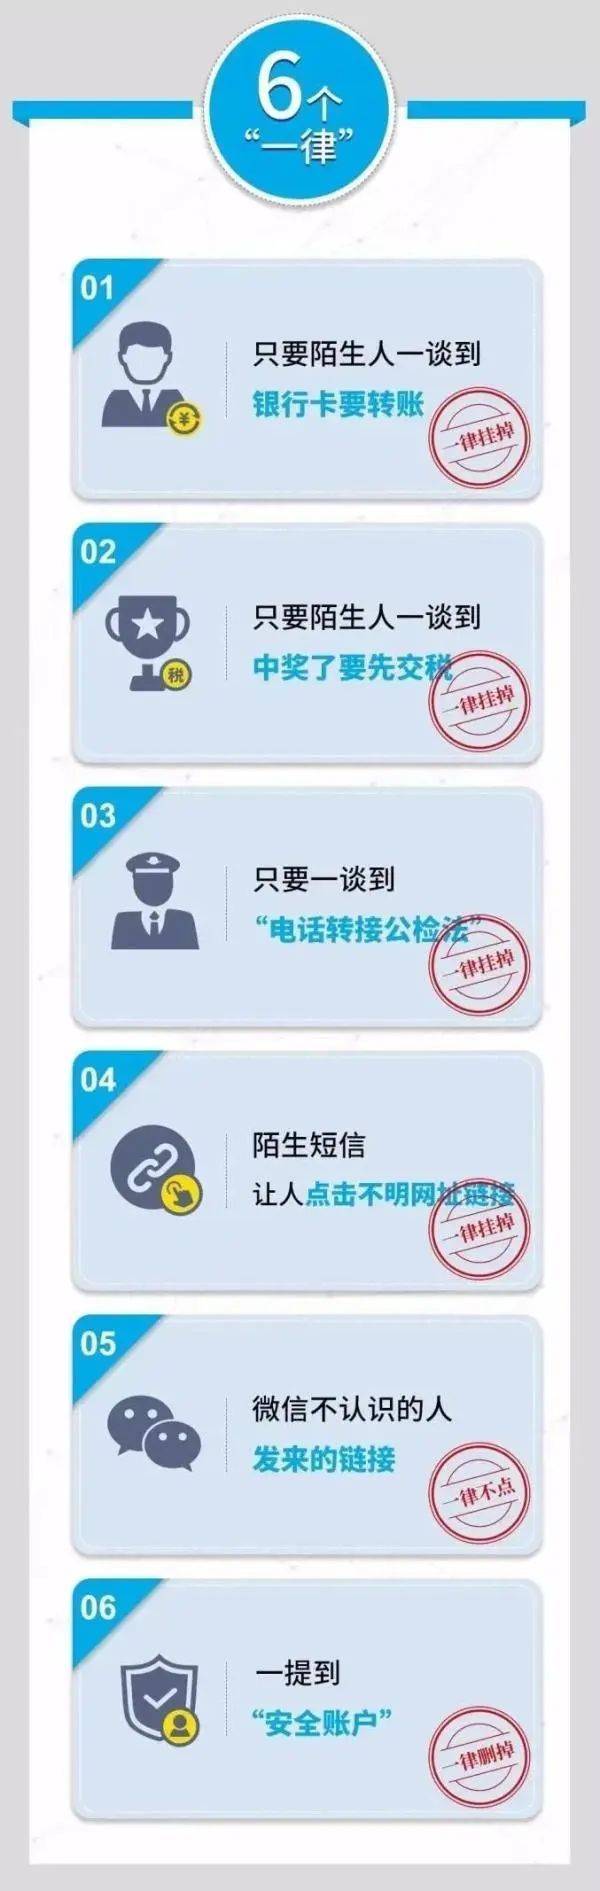 华为手机QQ怎么建群
:​紧急提醒！东营一学生已被骗！